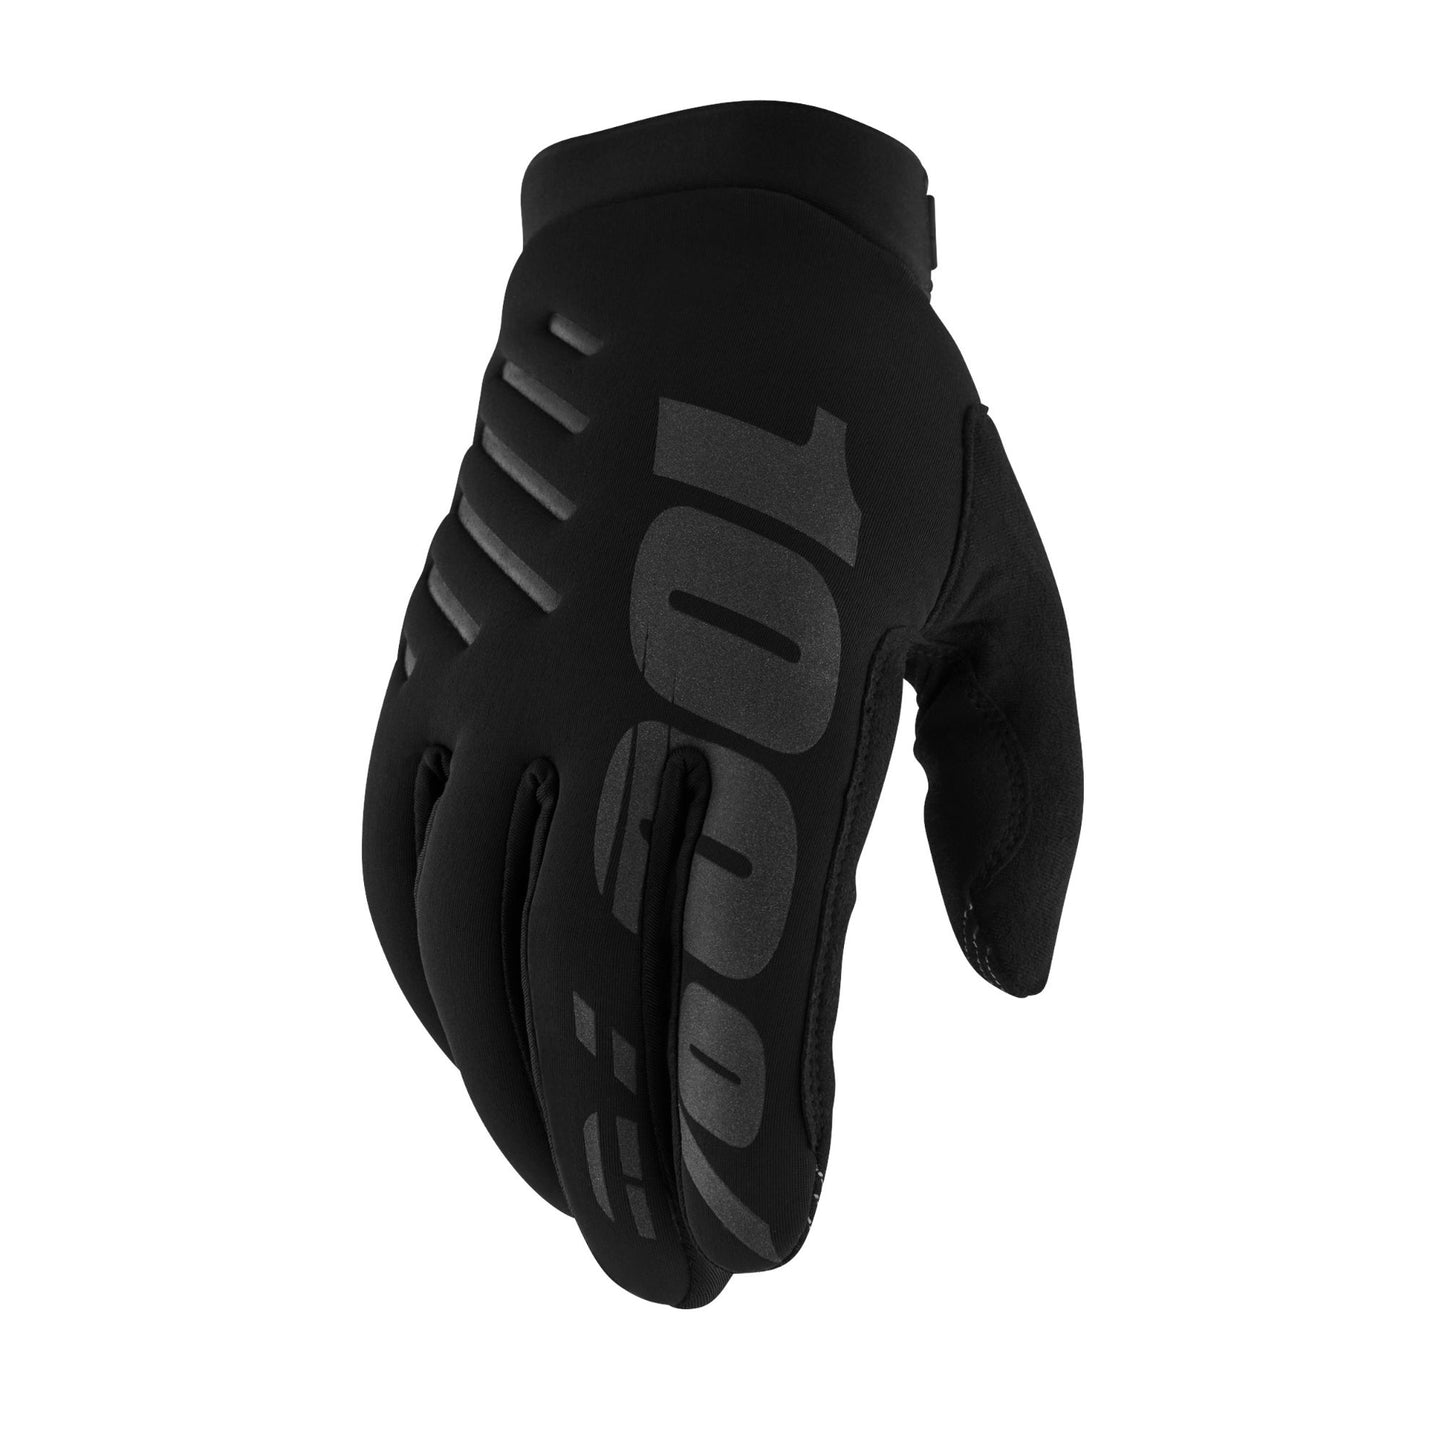 100% Brisker Women's Cold Weather Glove Black / Grey